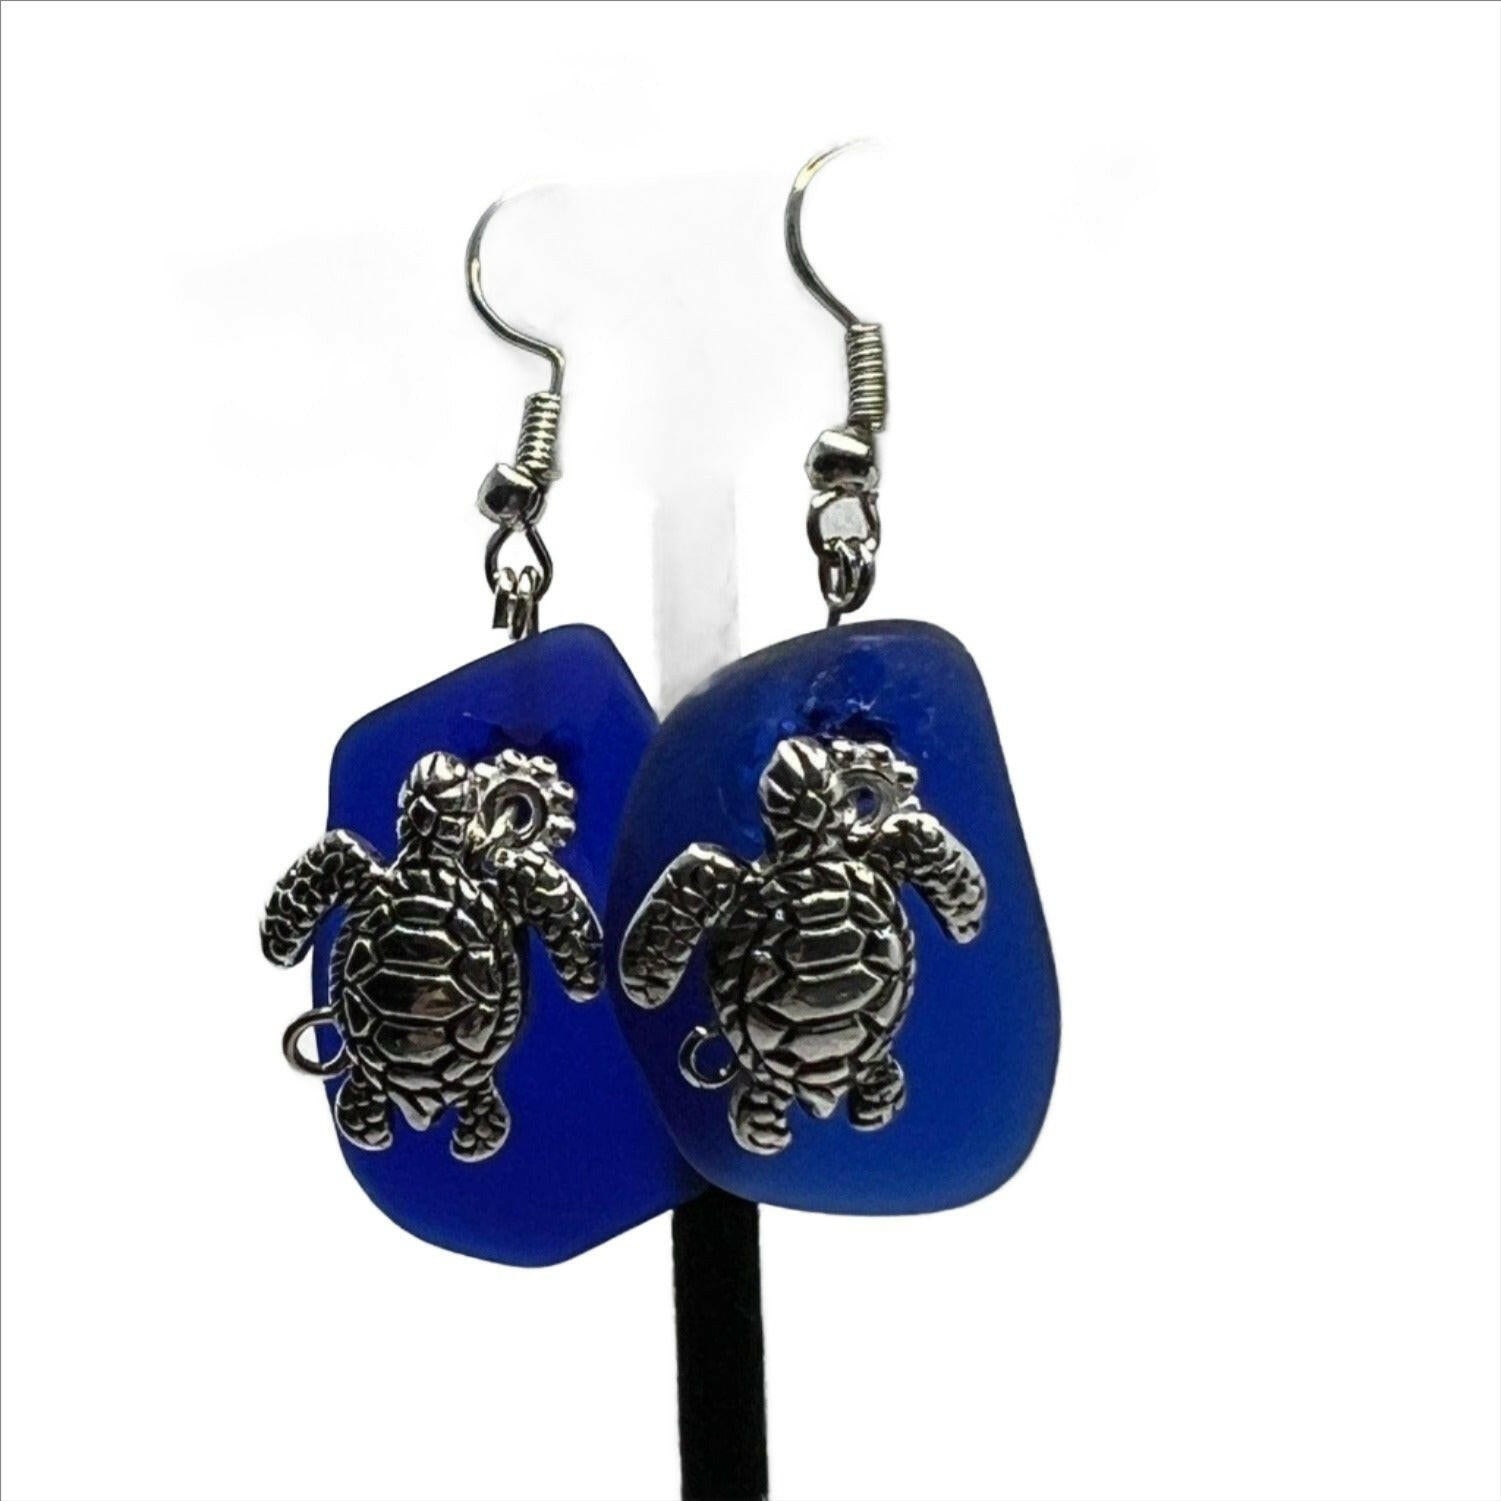 Bec Sue Jewelry Shop earrings 1 inch / blue/silver / silver turtle/blue glass Sea Turtle Jewelry, Sea Turtle Dangle Earrings Tags 477